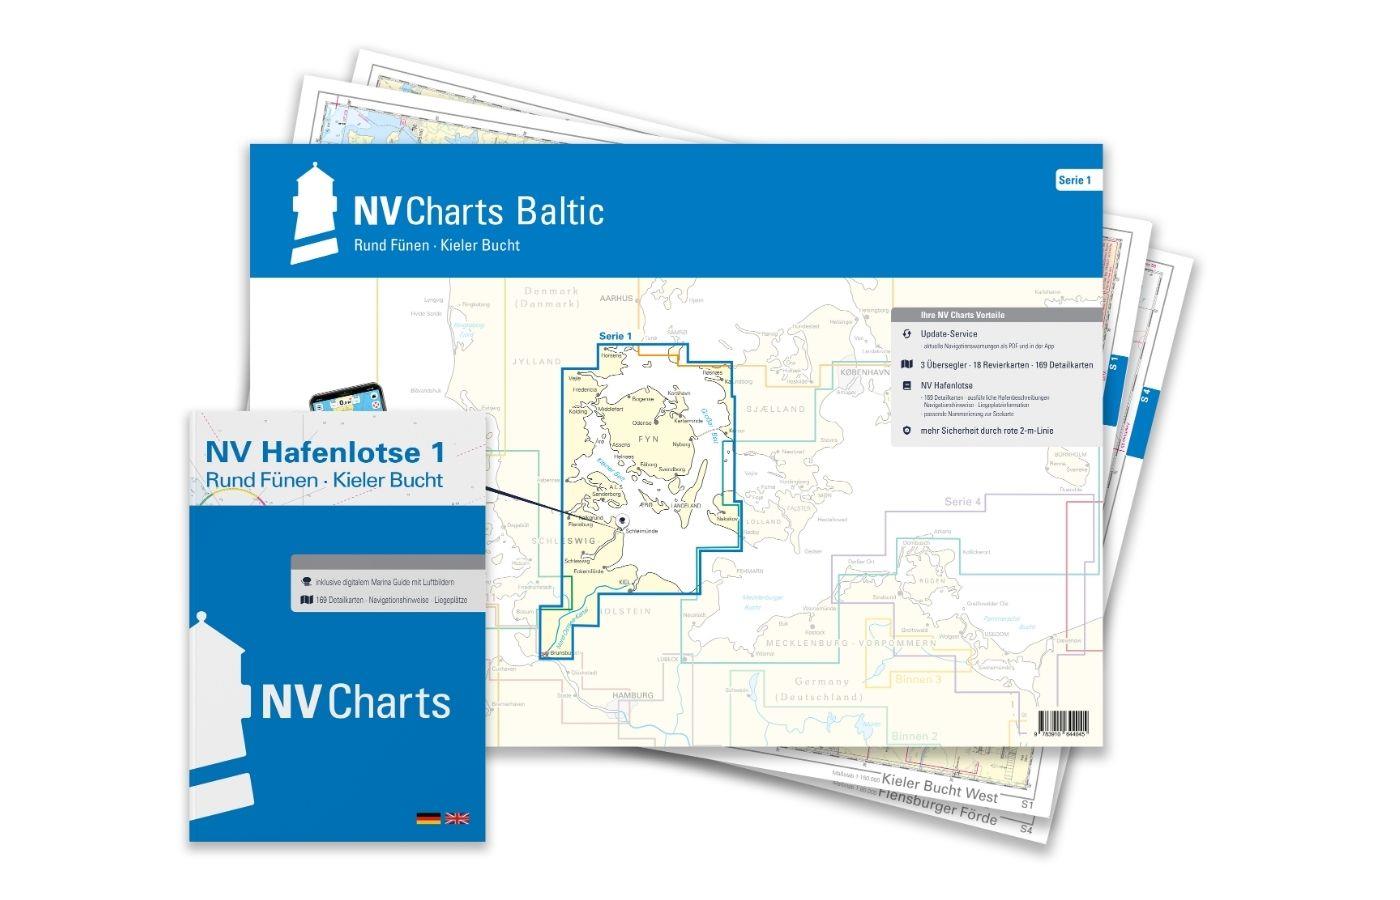 NV Charts Baltic Plano Série 1, Autour de Funen-Baie de Kiel